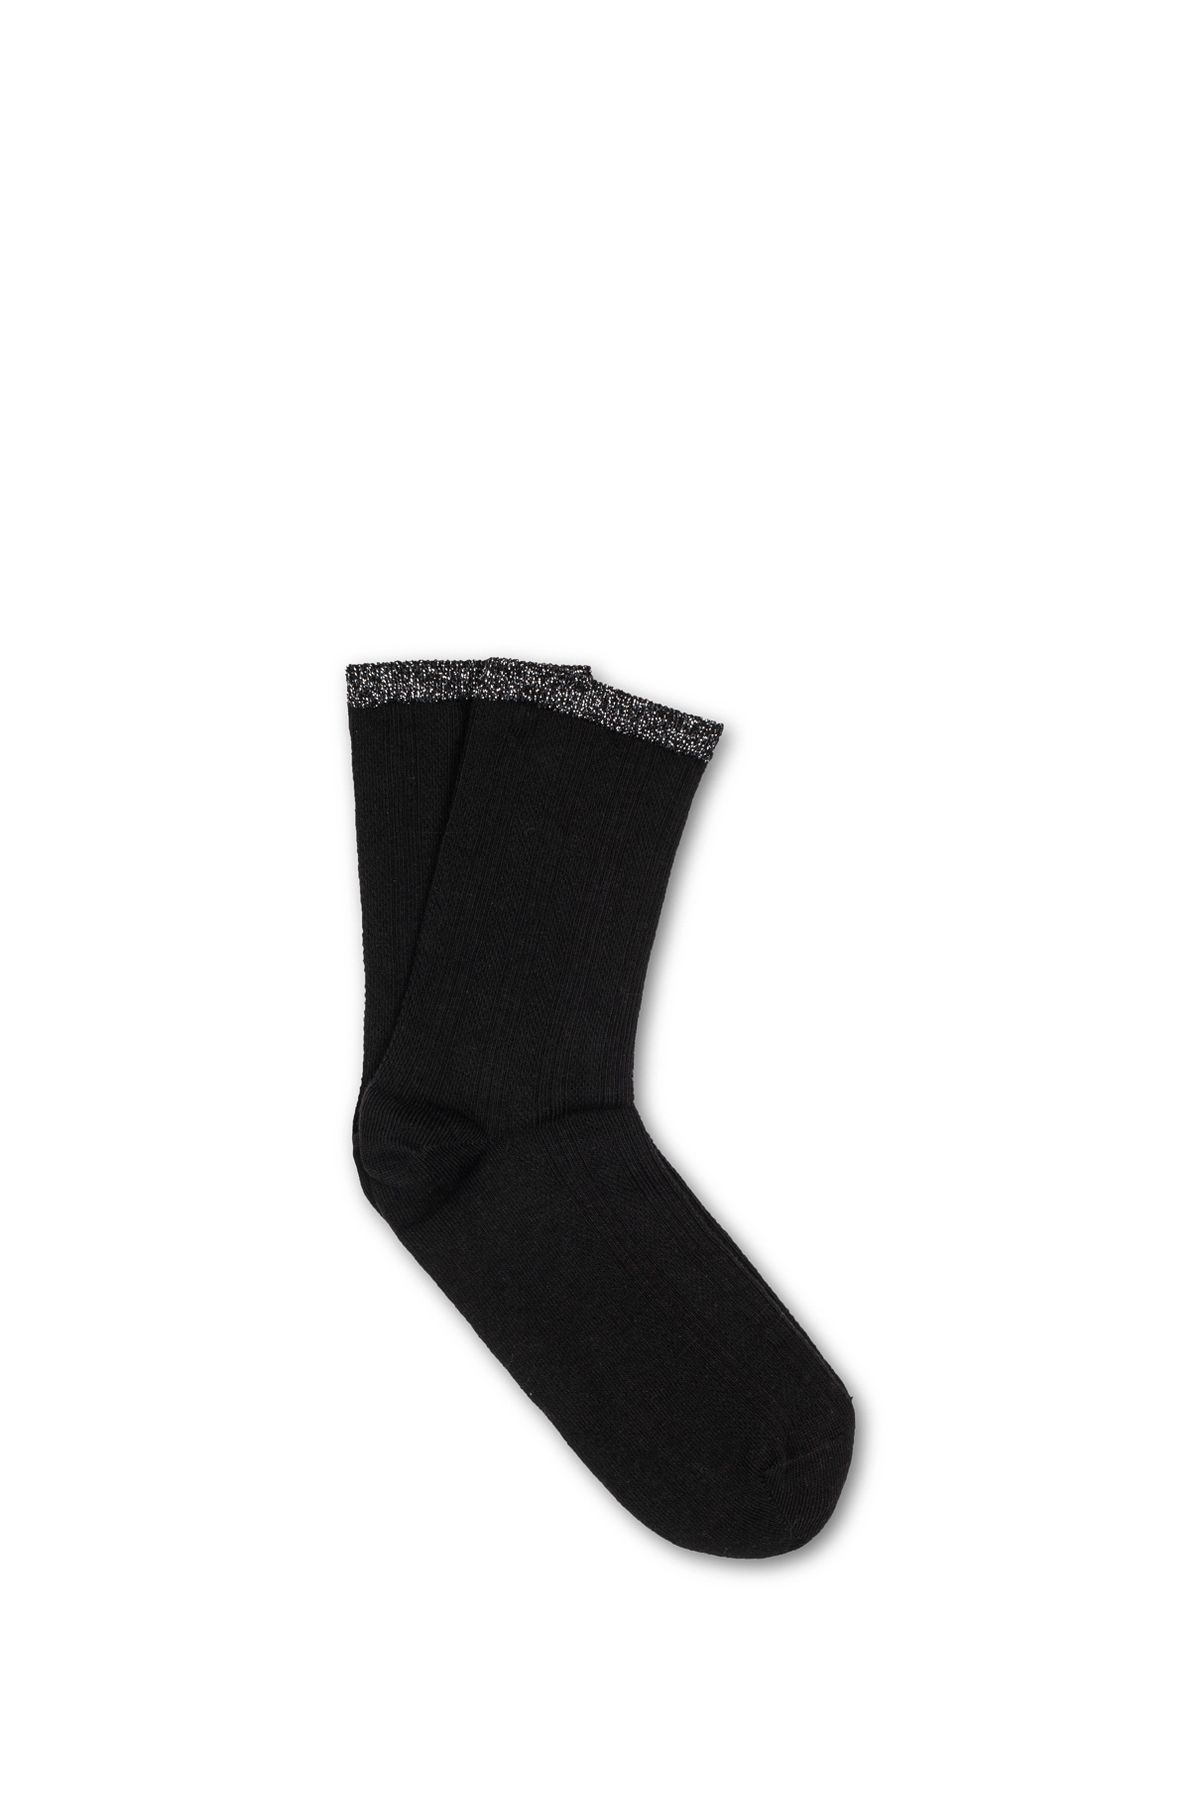 Mavi Bileği Simli Siyah Soket Çorap 196512-900